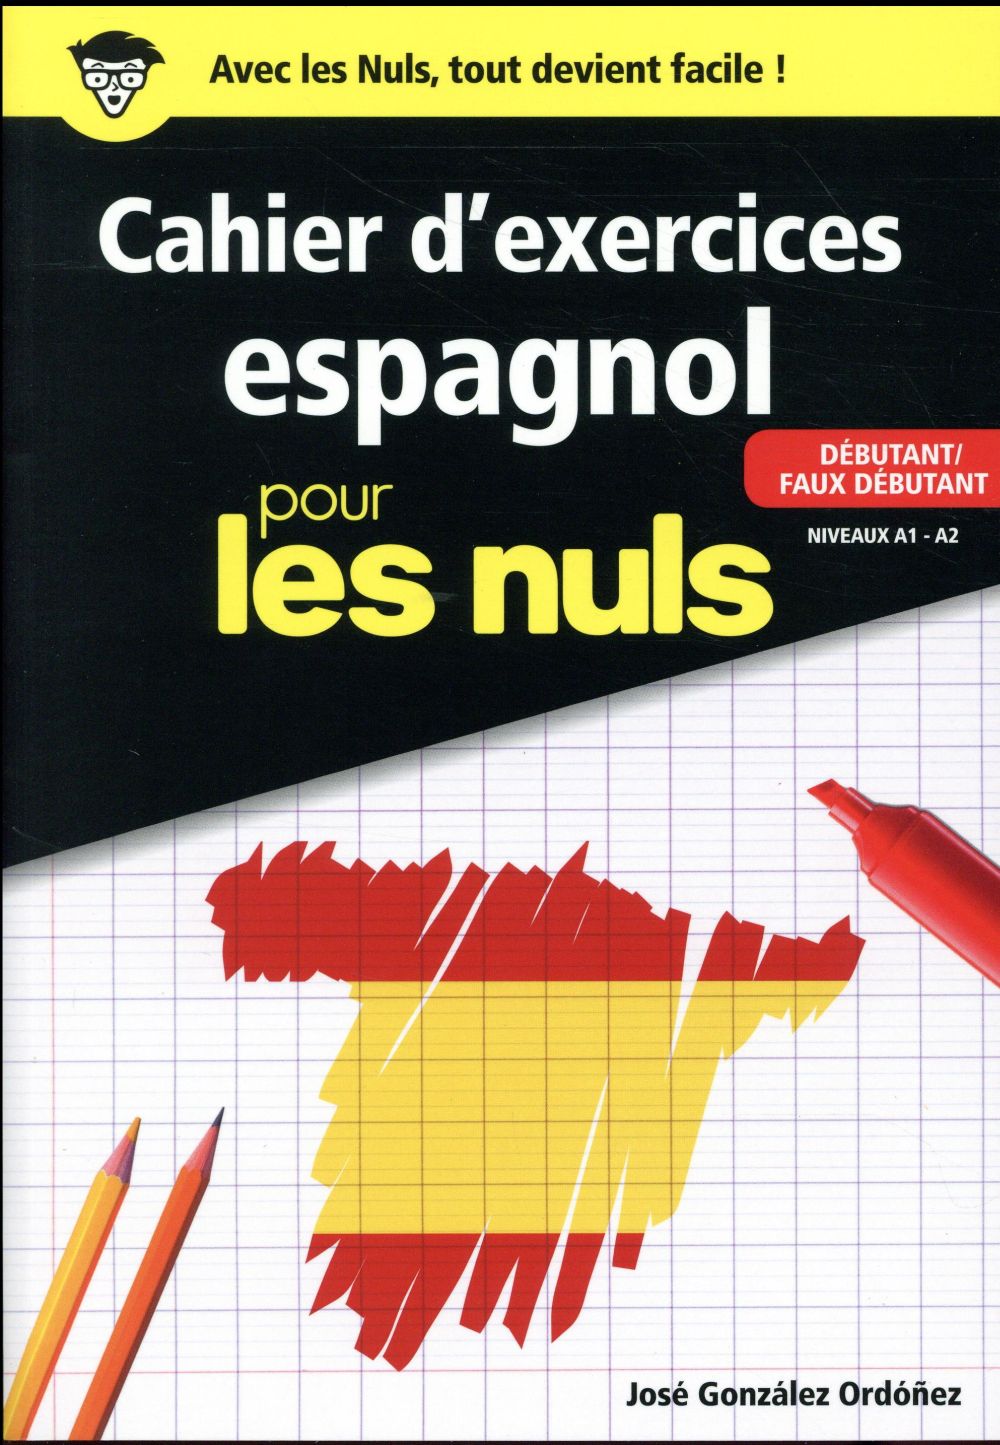 CAHIER D'EXERCICES ESPAGNOL POUR LES NULS - DEBUTANT / FAUX DEBUTANT - NIVEAUX A1 - A2